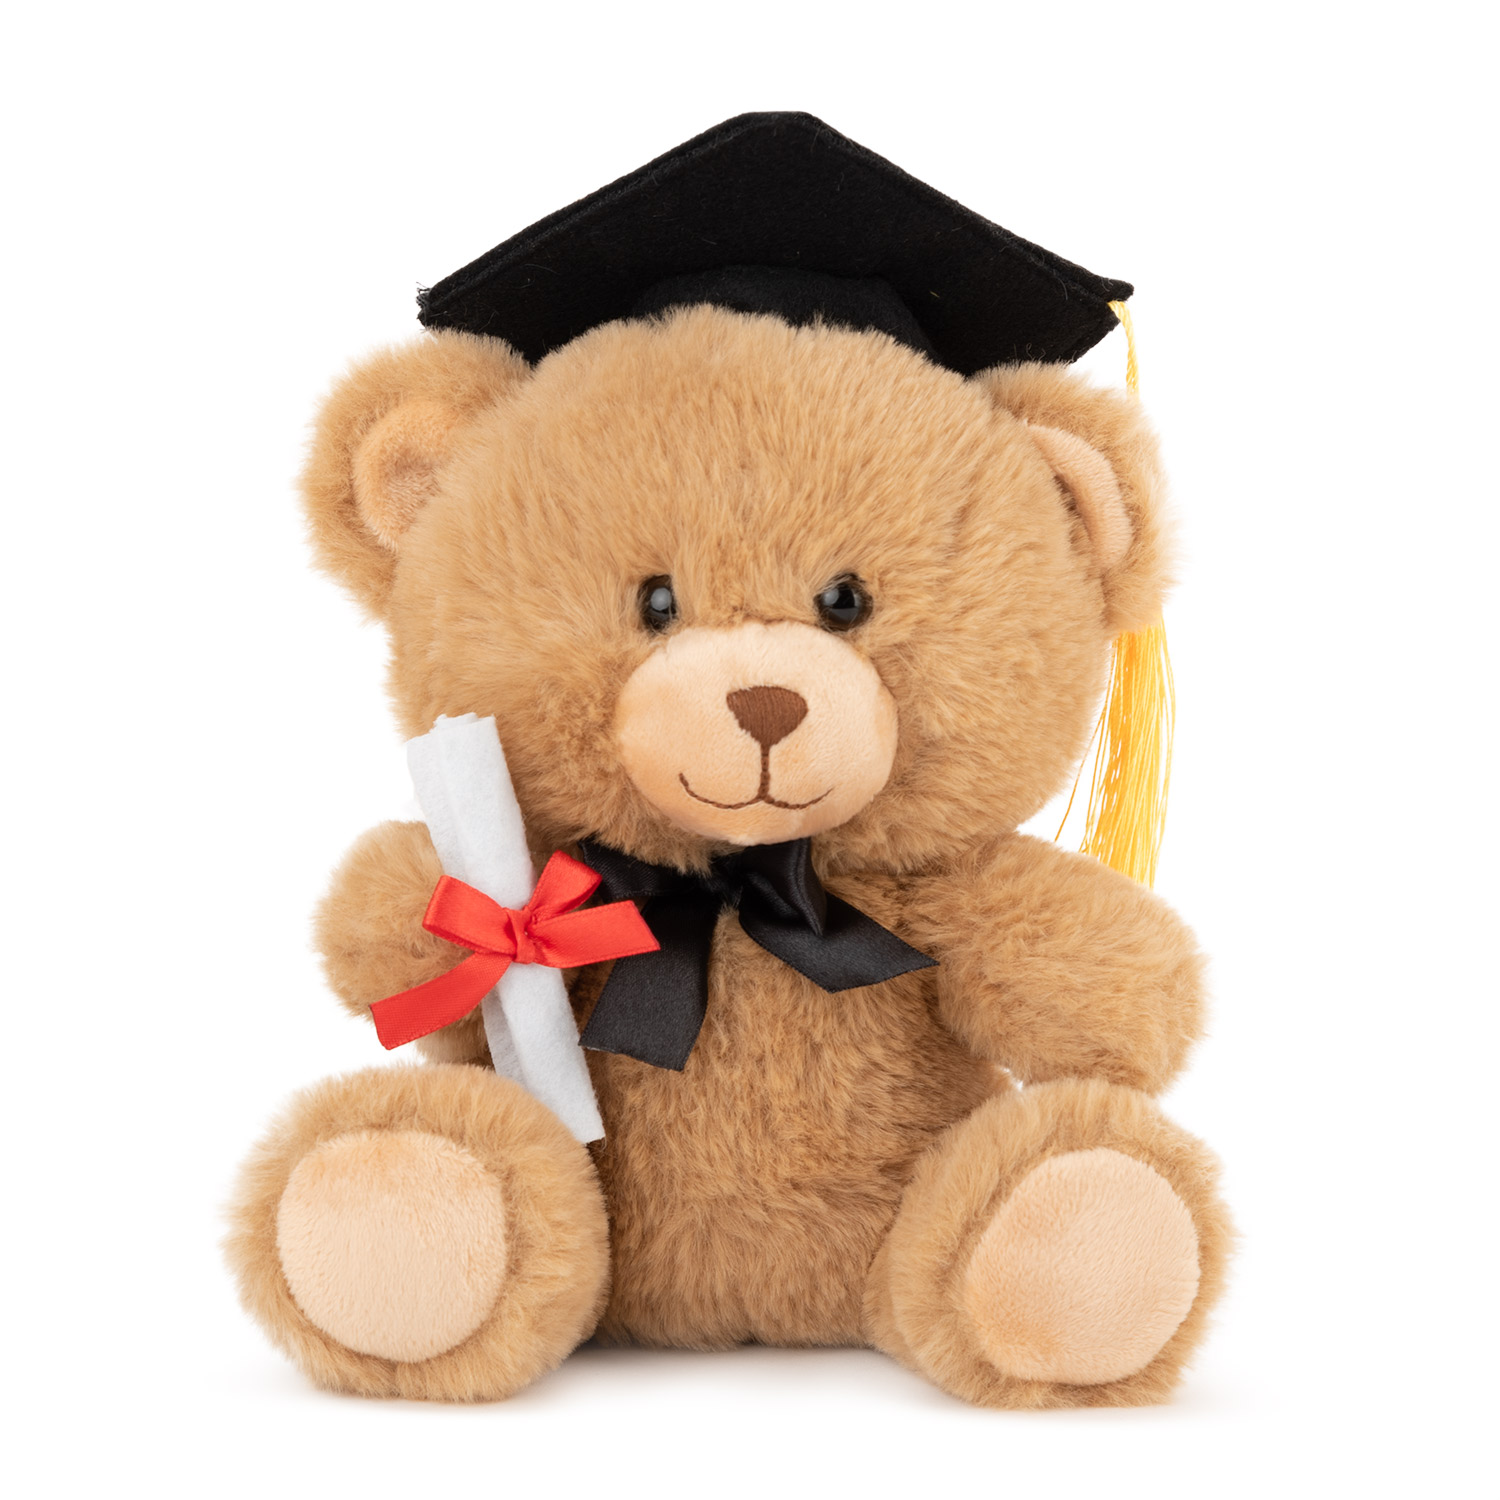 Bear graduate - Brown